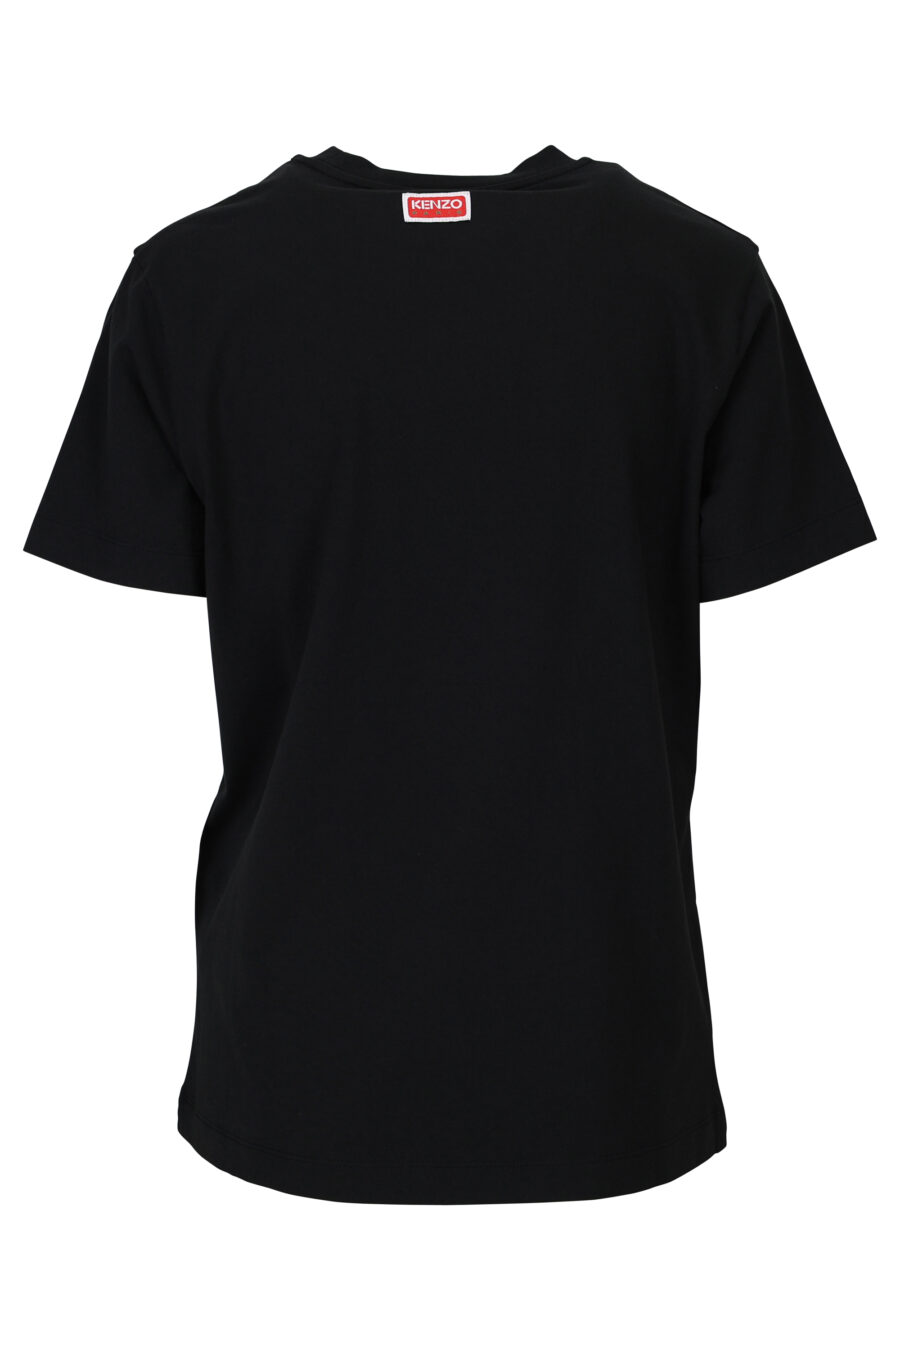 Camiseta negra con logo amarillo "kenzo target" - 3612230510654 1